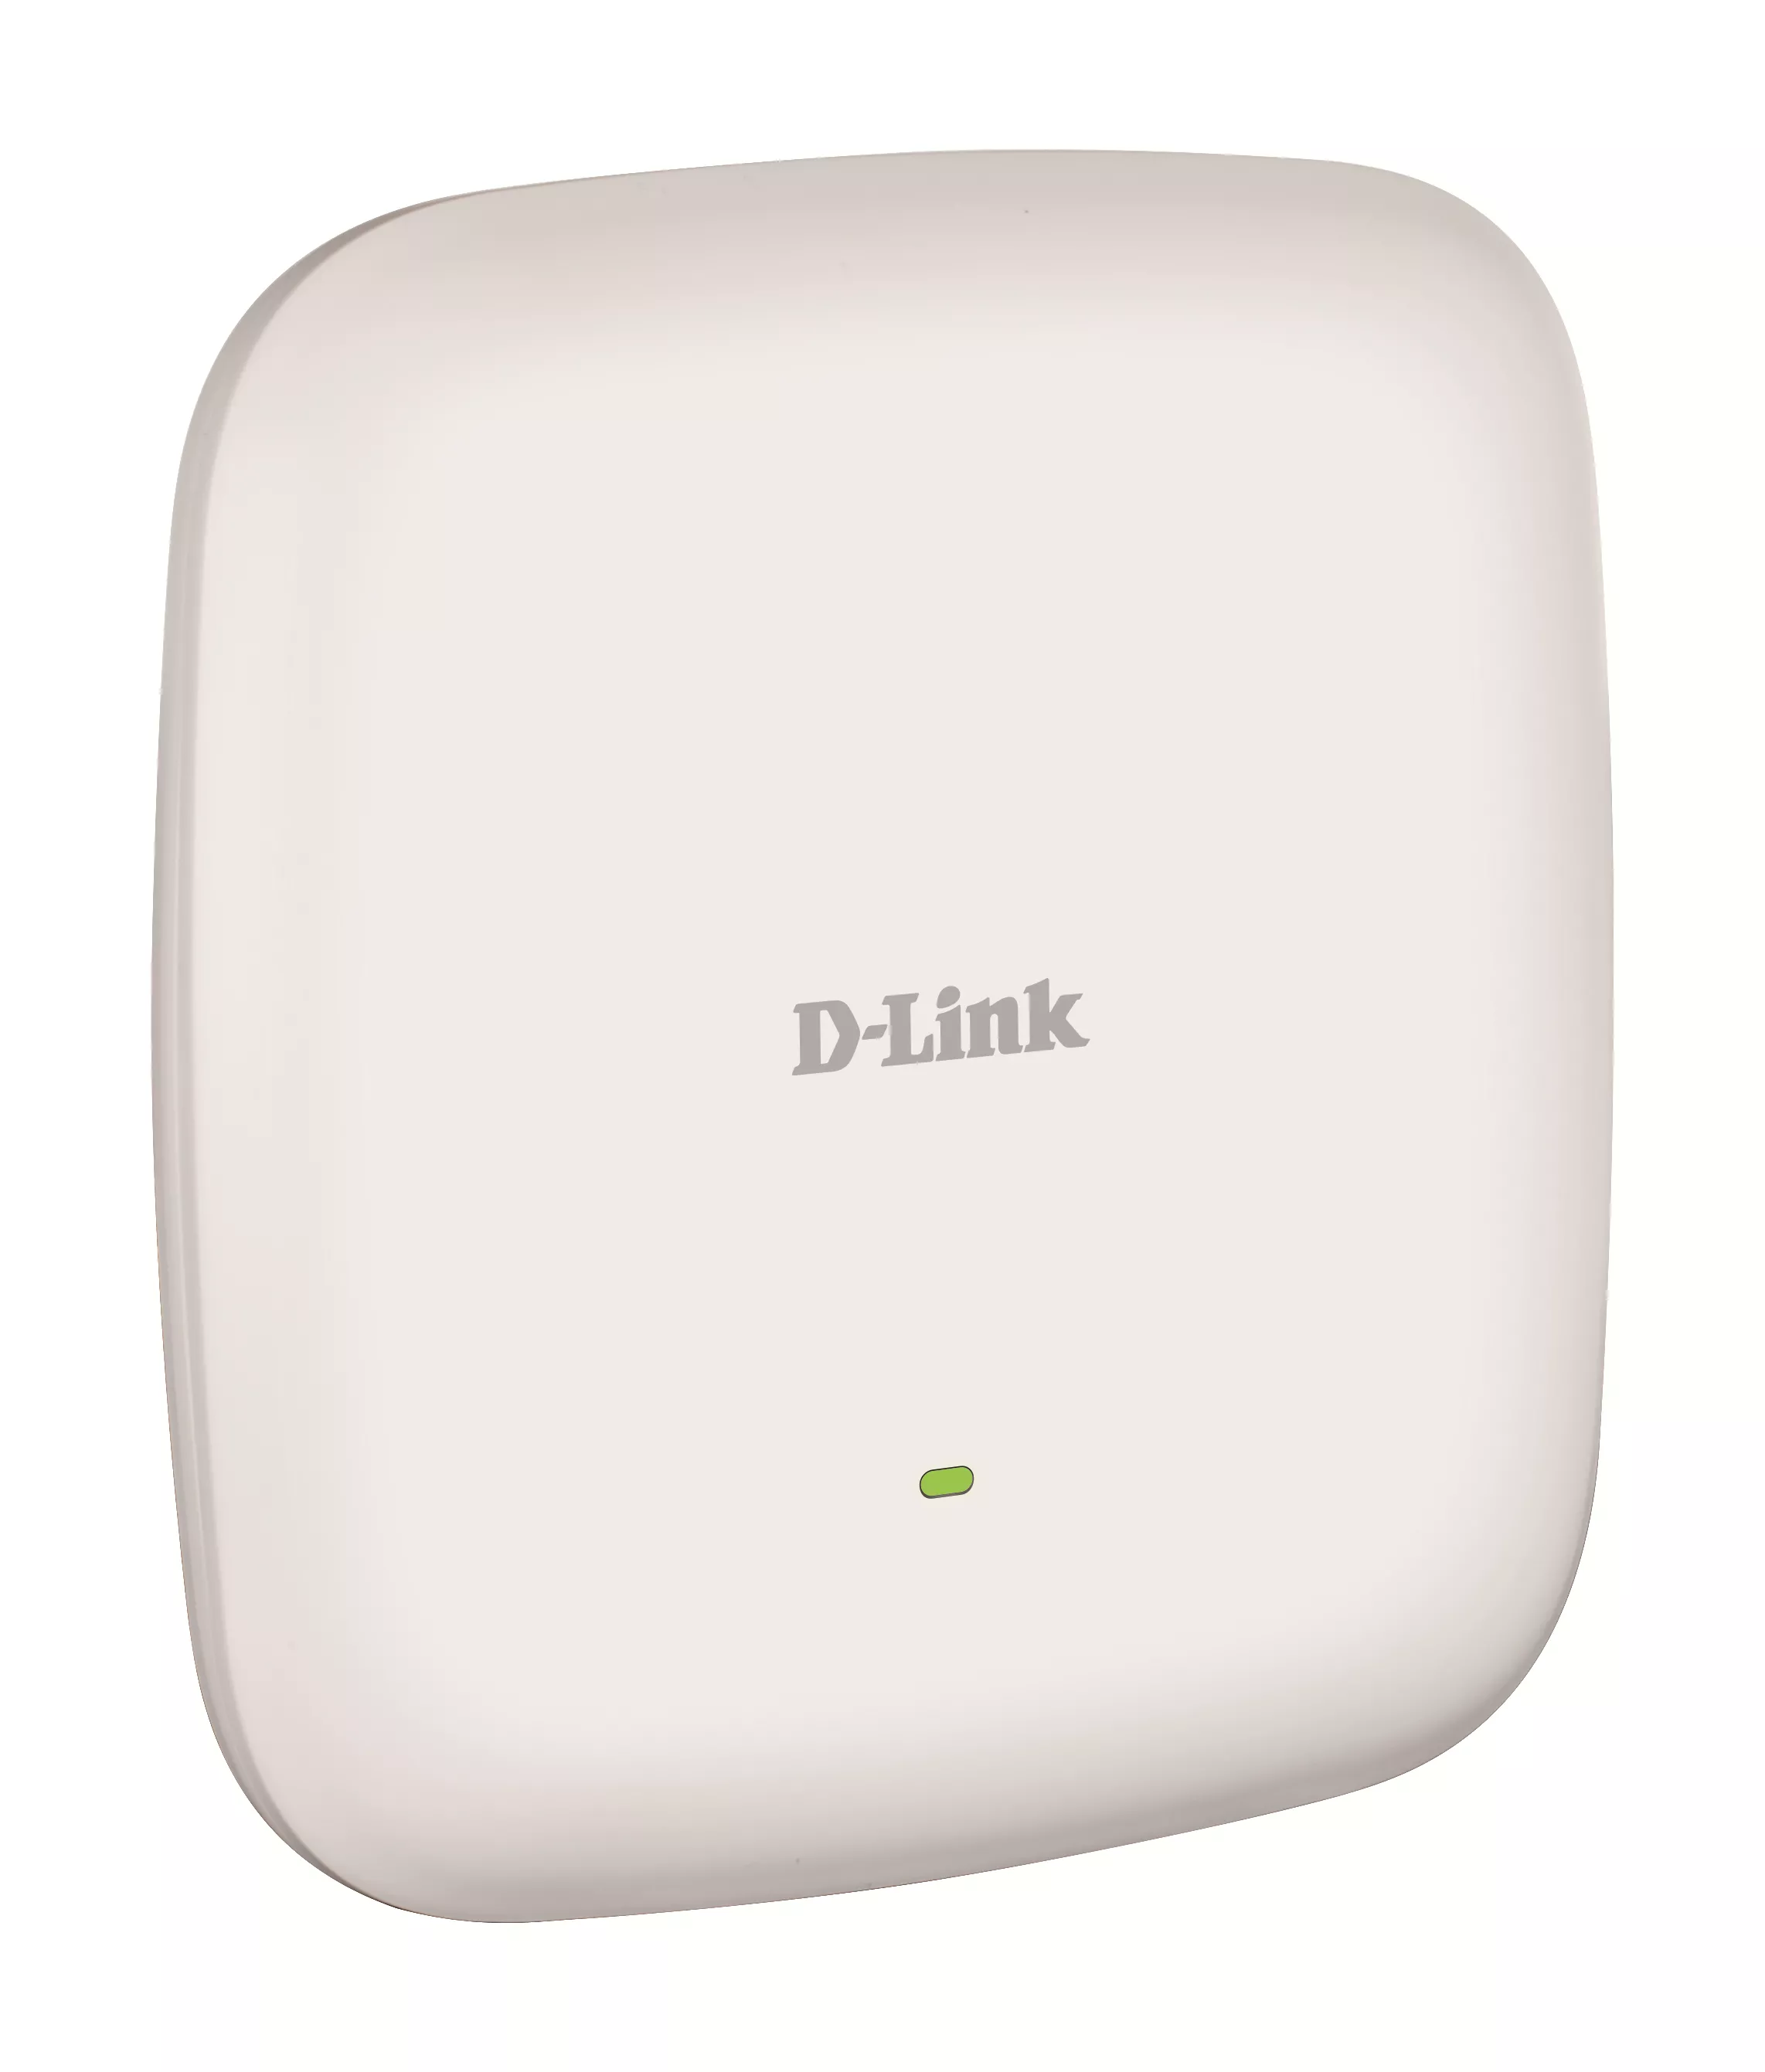 Vente D-LINK Nuclias Connect AC2300 Wave 2 Access Point D-Link au meilleur prix - visuel 2